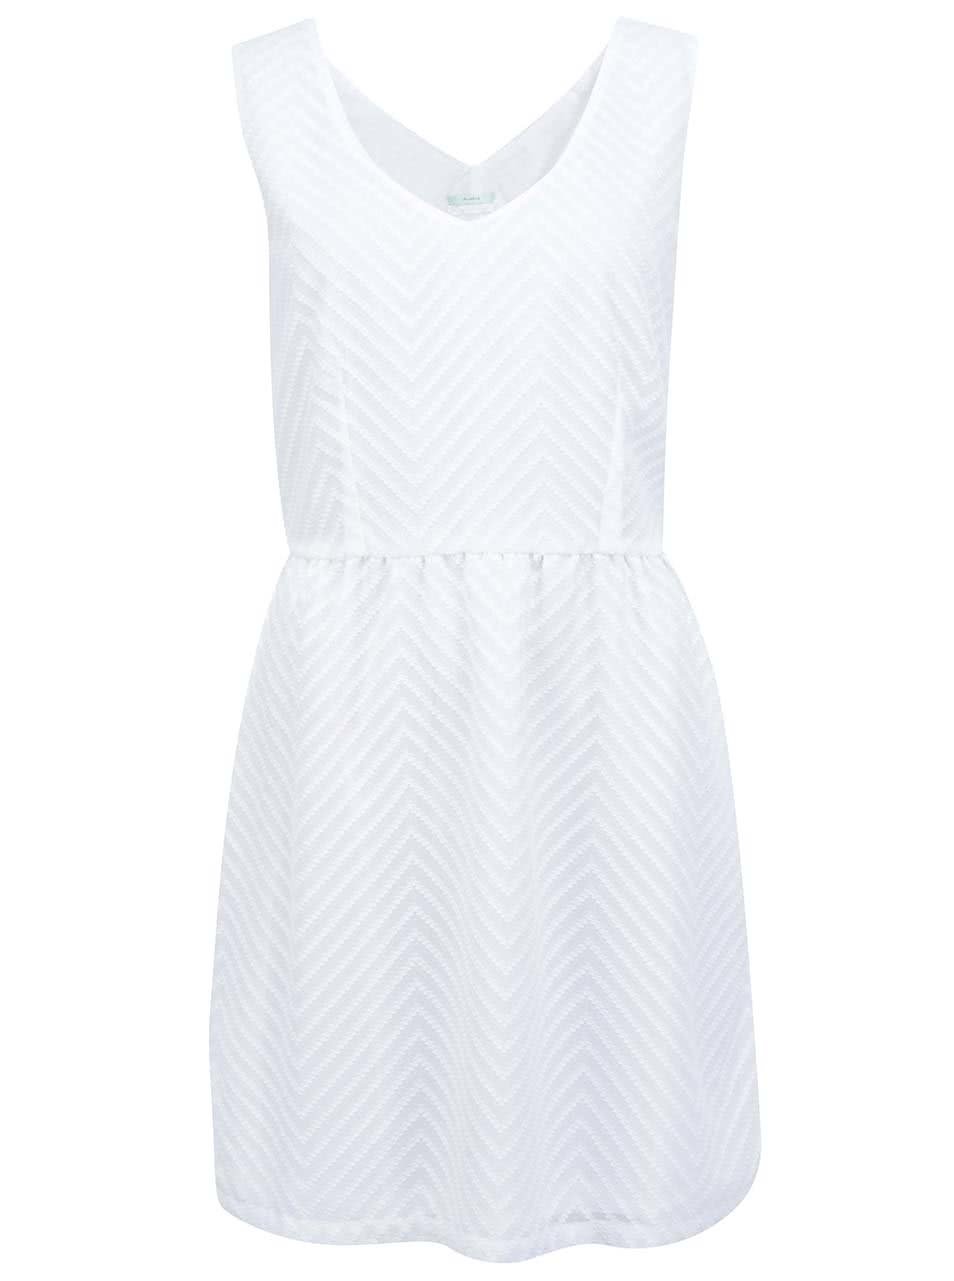 Bílé šaty se vzorem Skunkfunk Ugetta